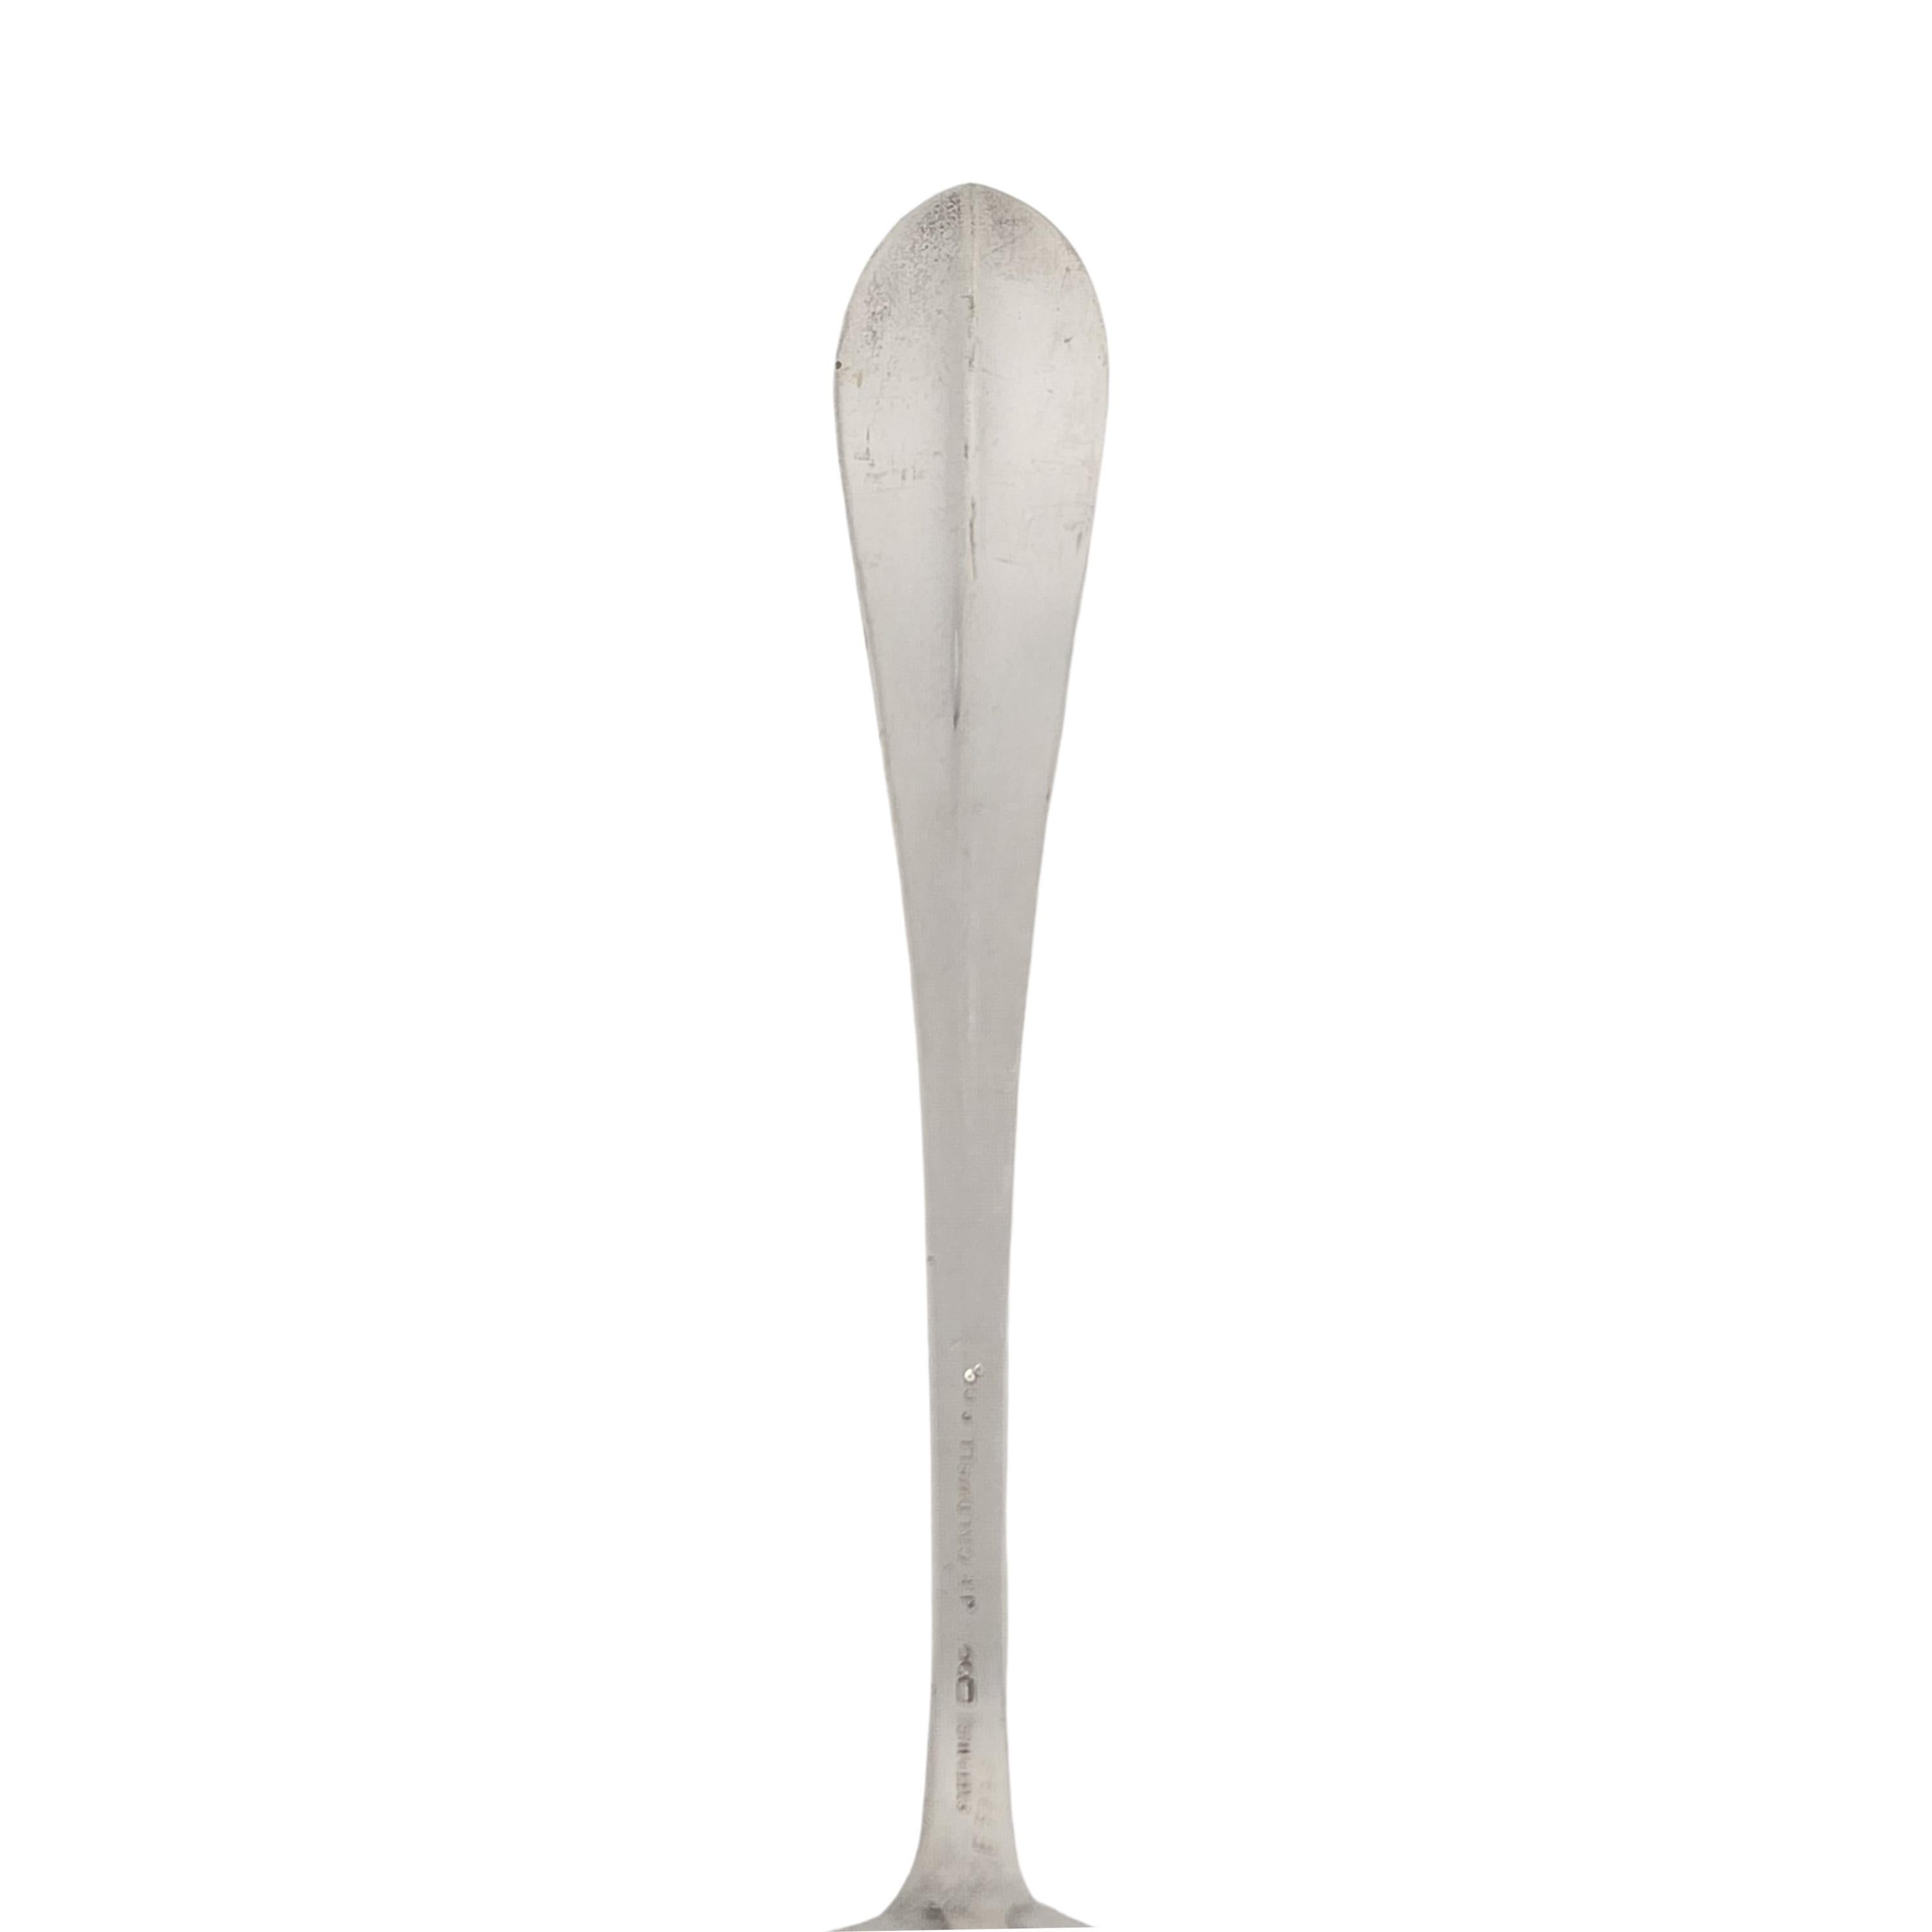 Dominick & Haff JE Caldwell Priscilla Sterling Silver Serving Fork w/mono #15600 For Sale 1